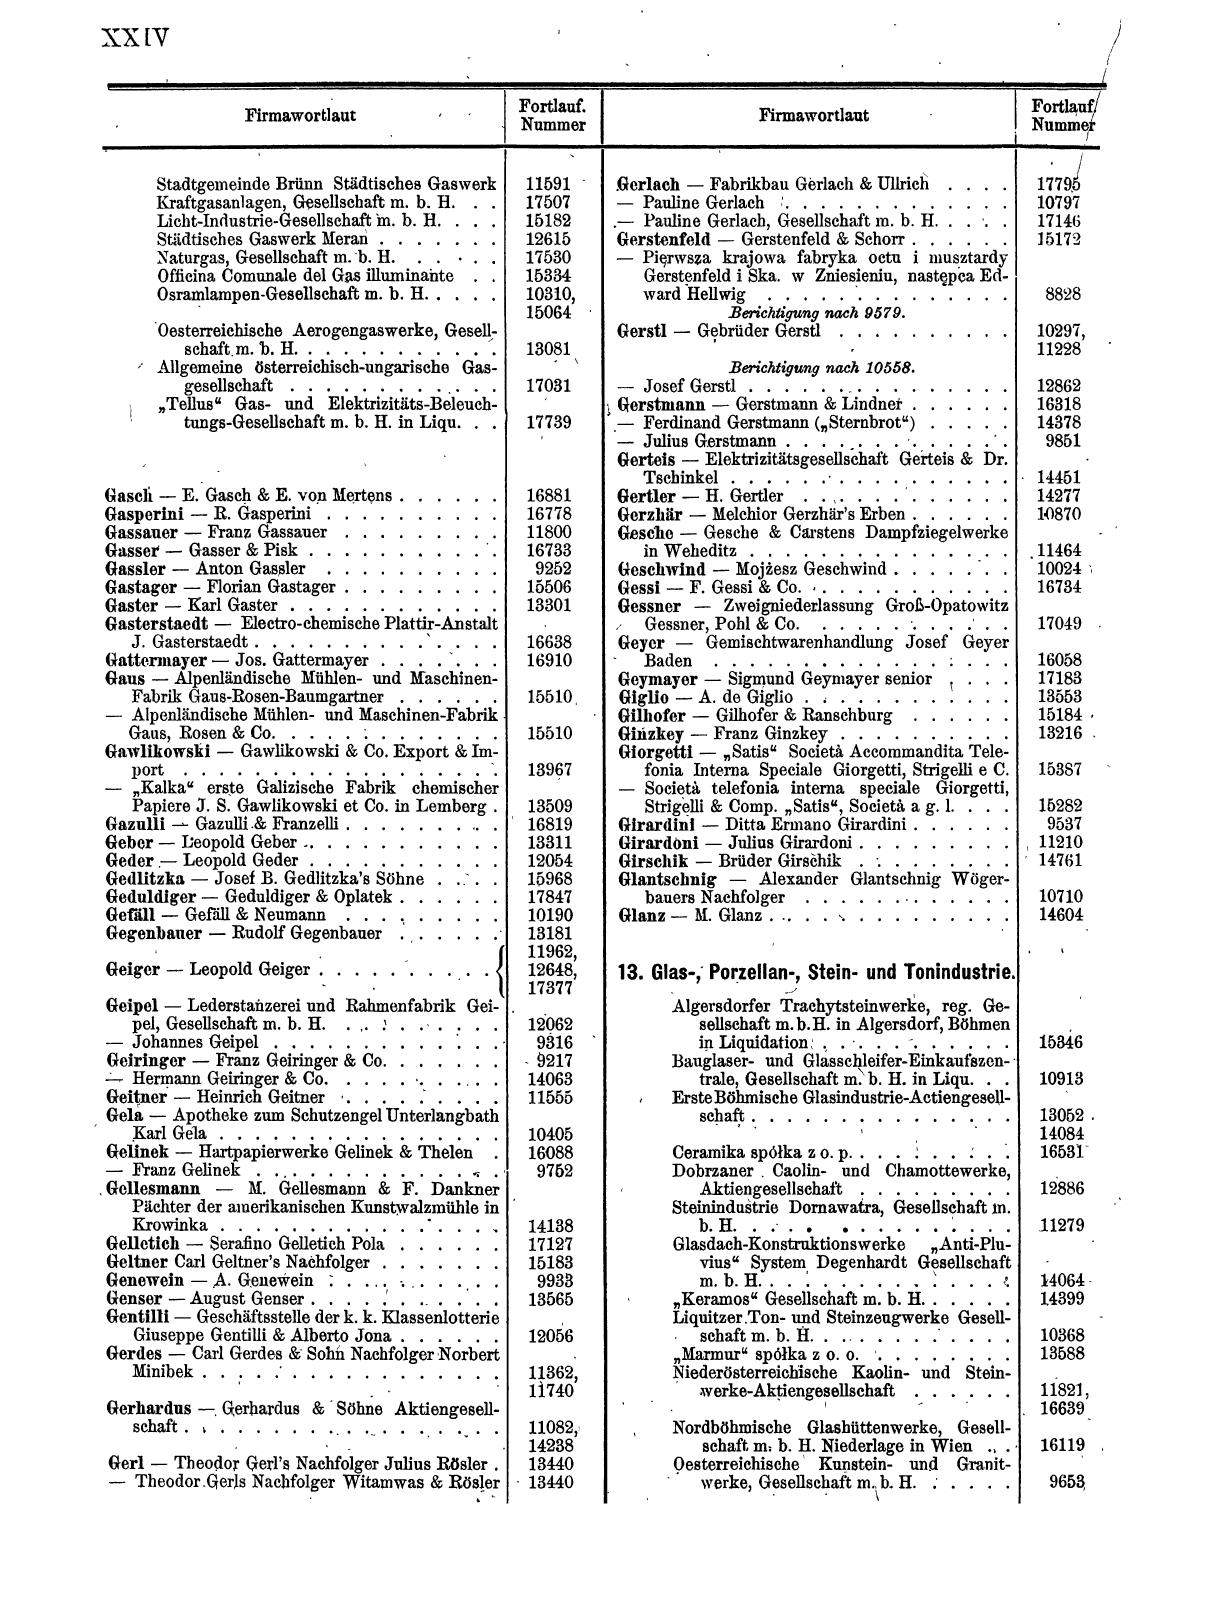 Zentralblatt für die Eintragungen in das Handelsregister 1913, Teil 2 - Seite 28